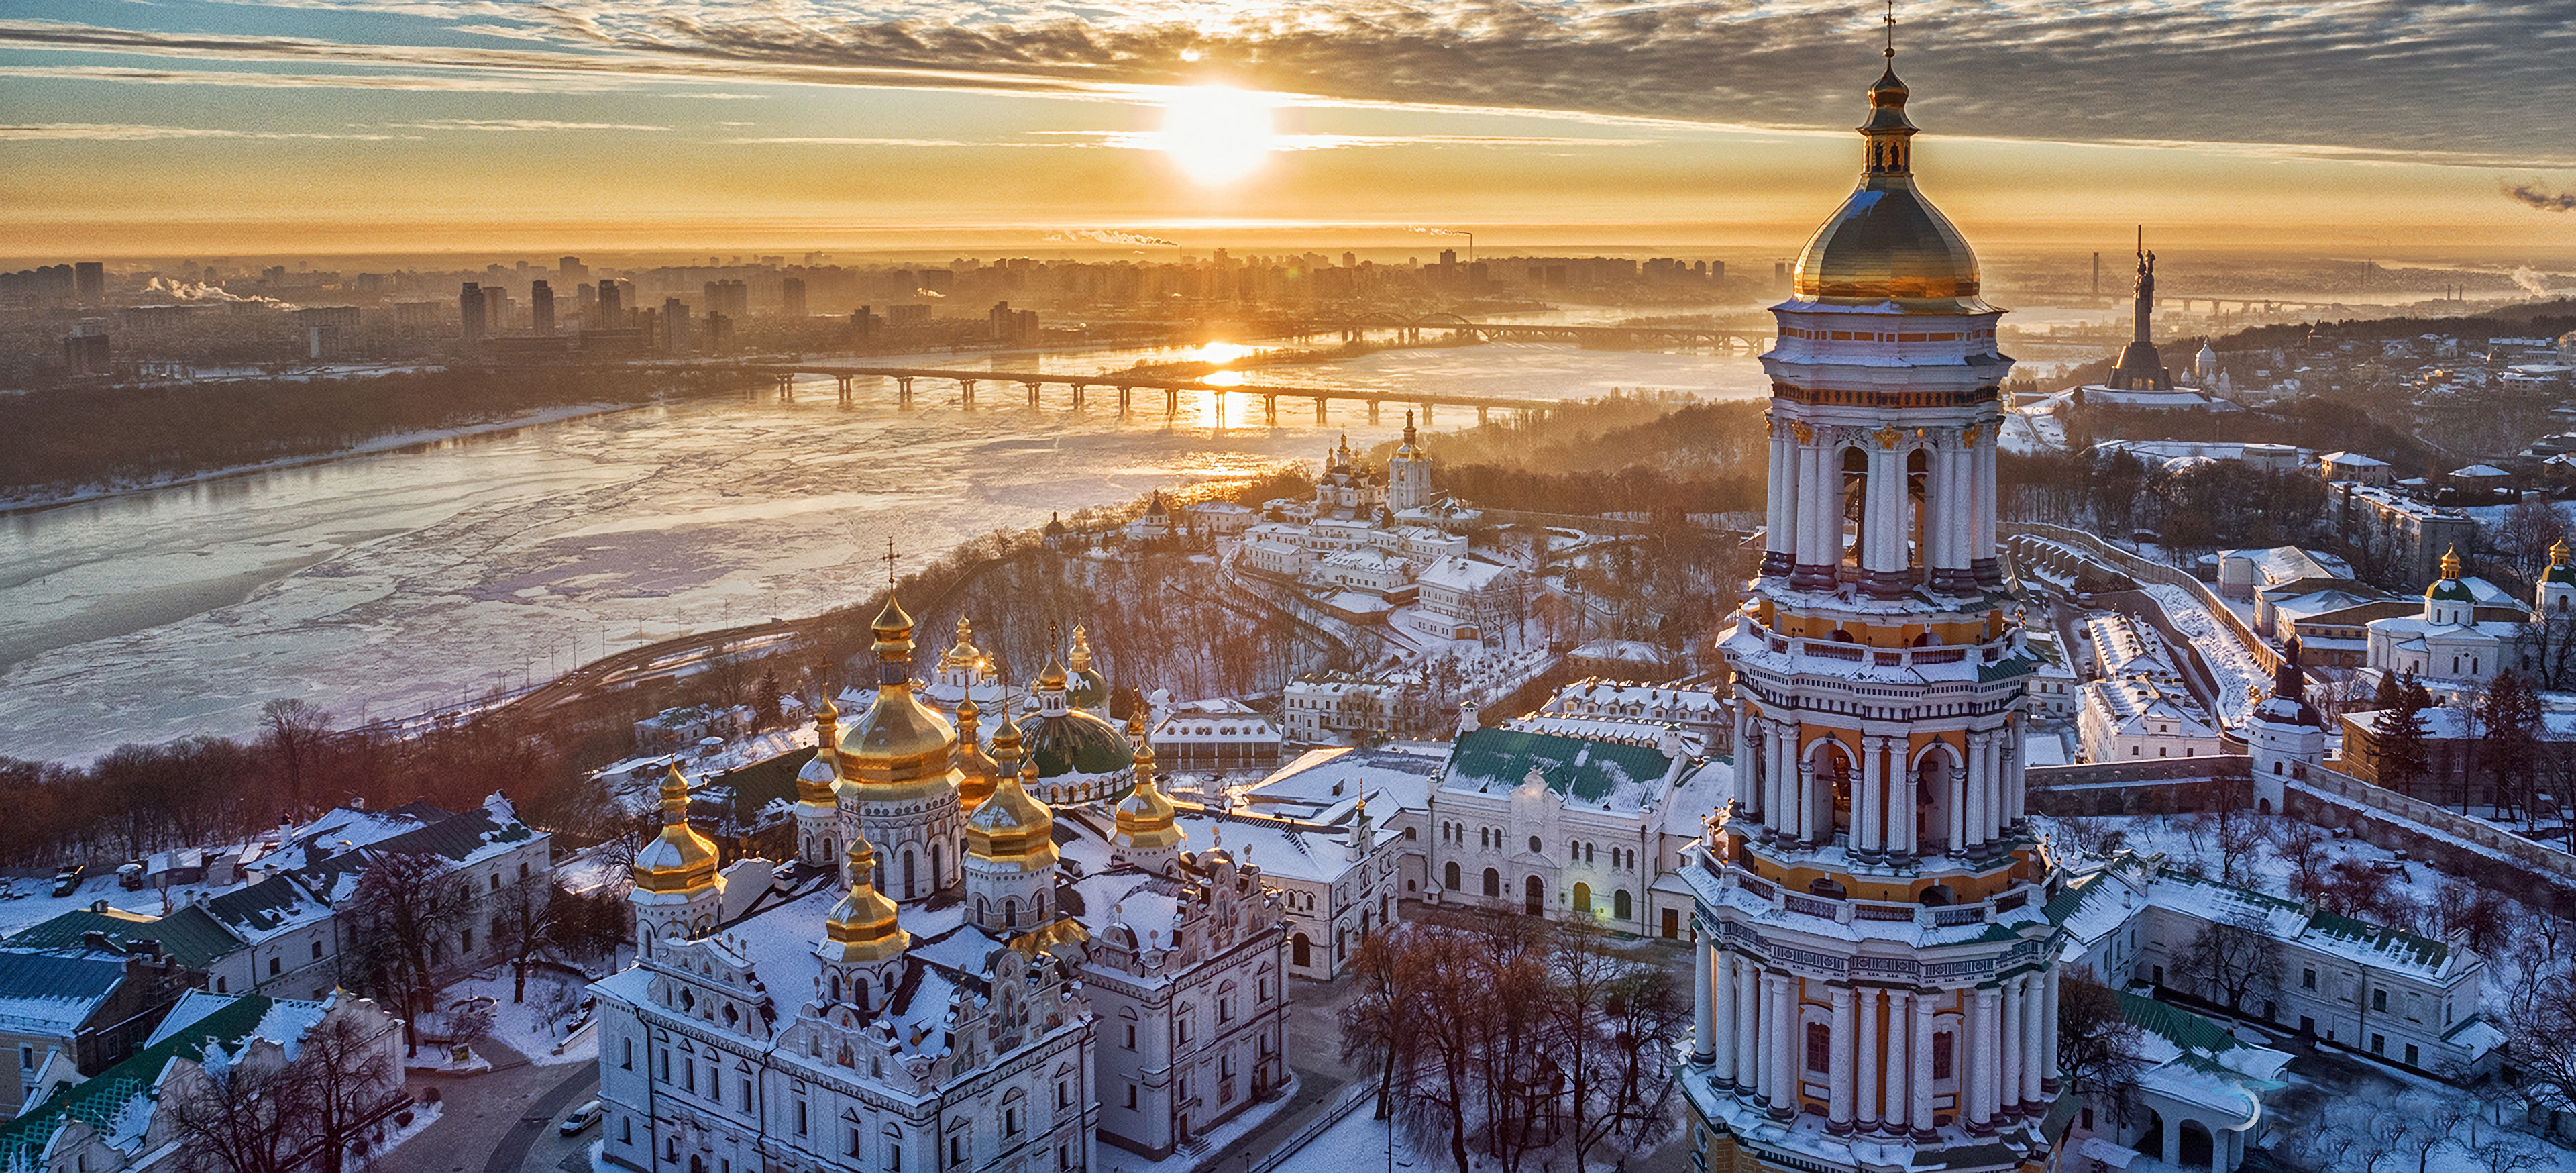 Churches in Kiev Ukraine